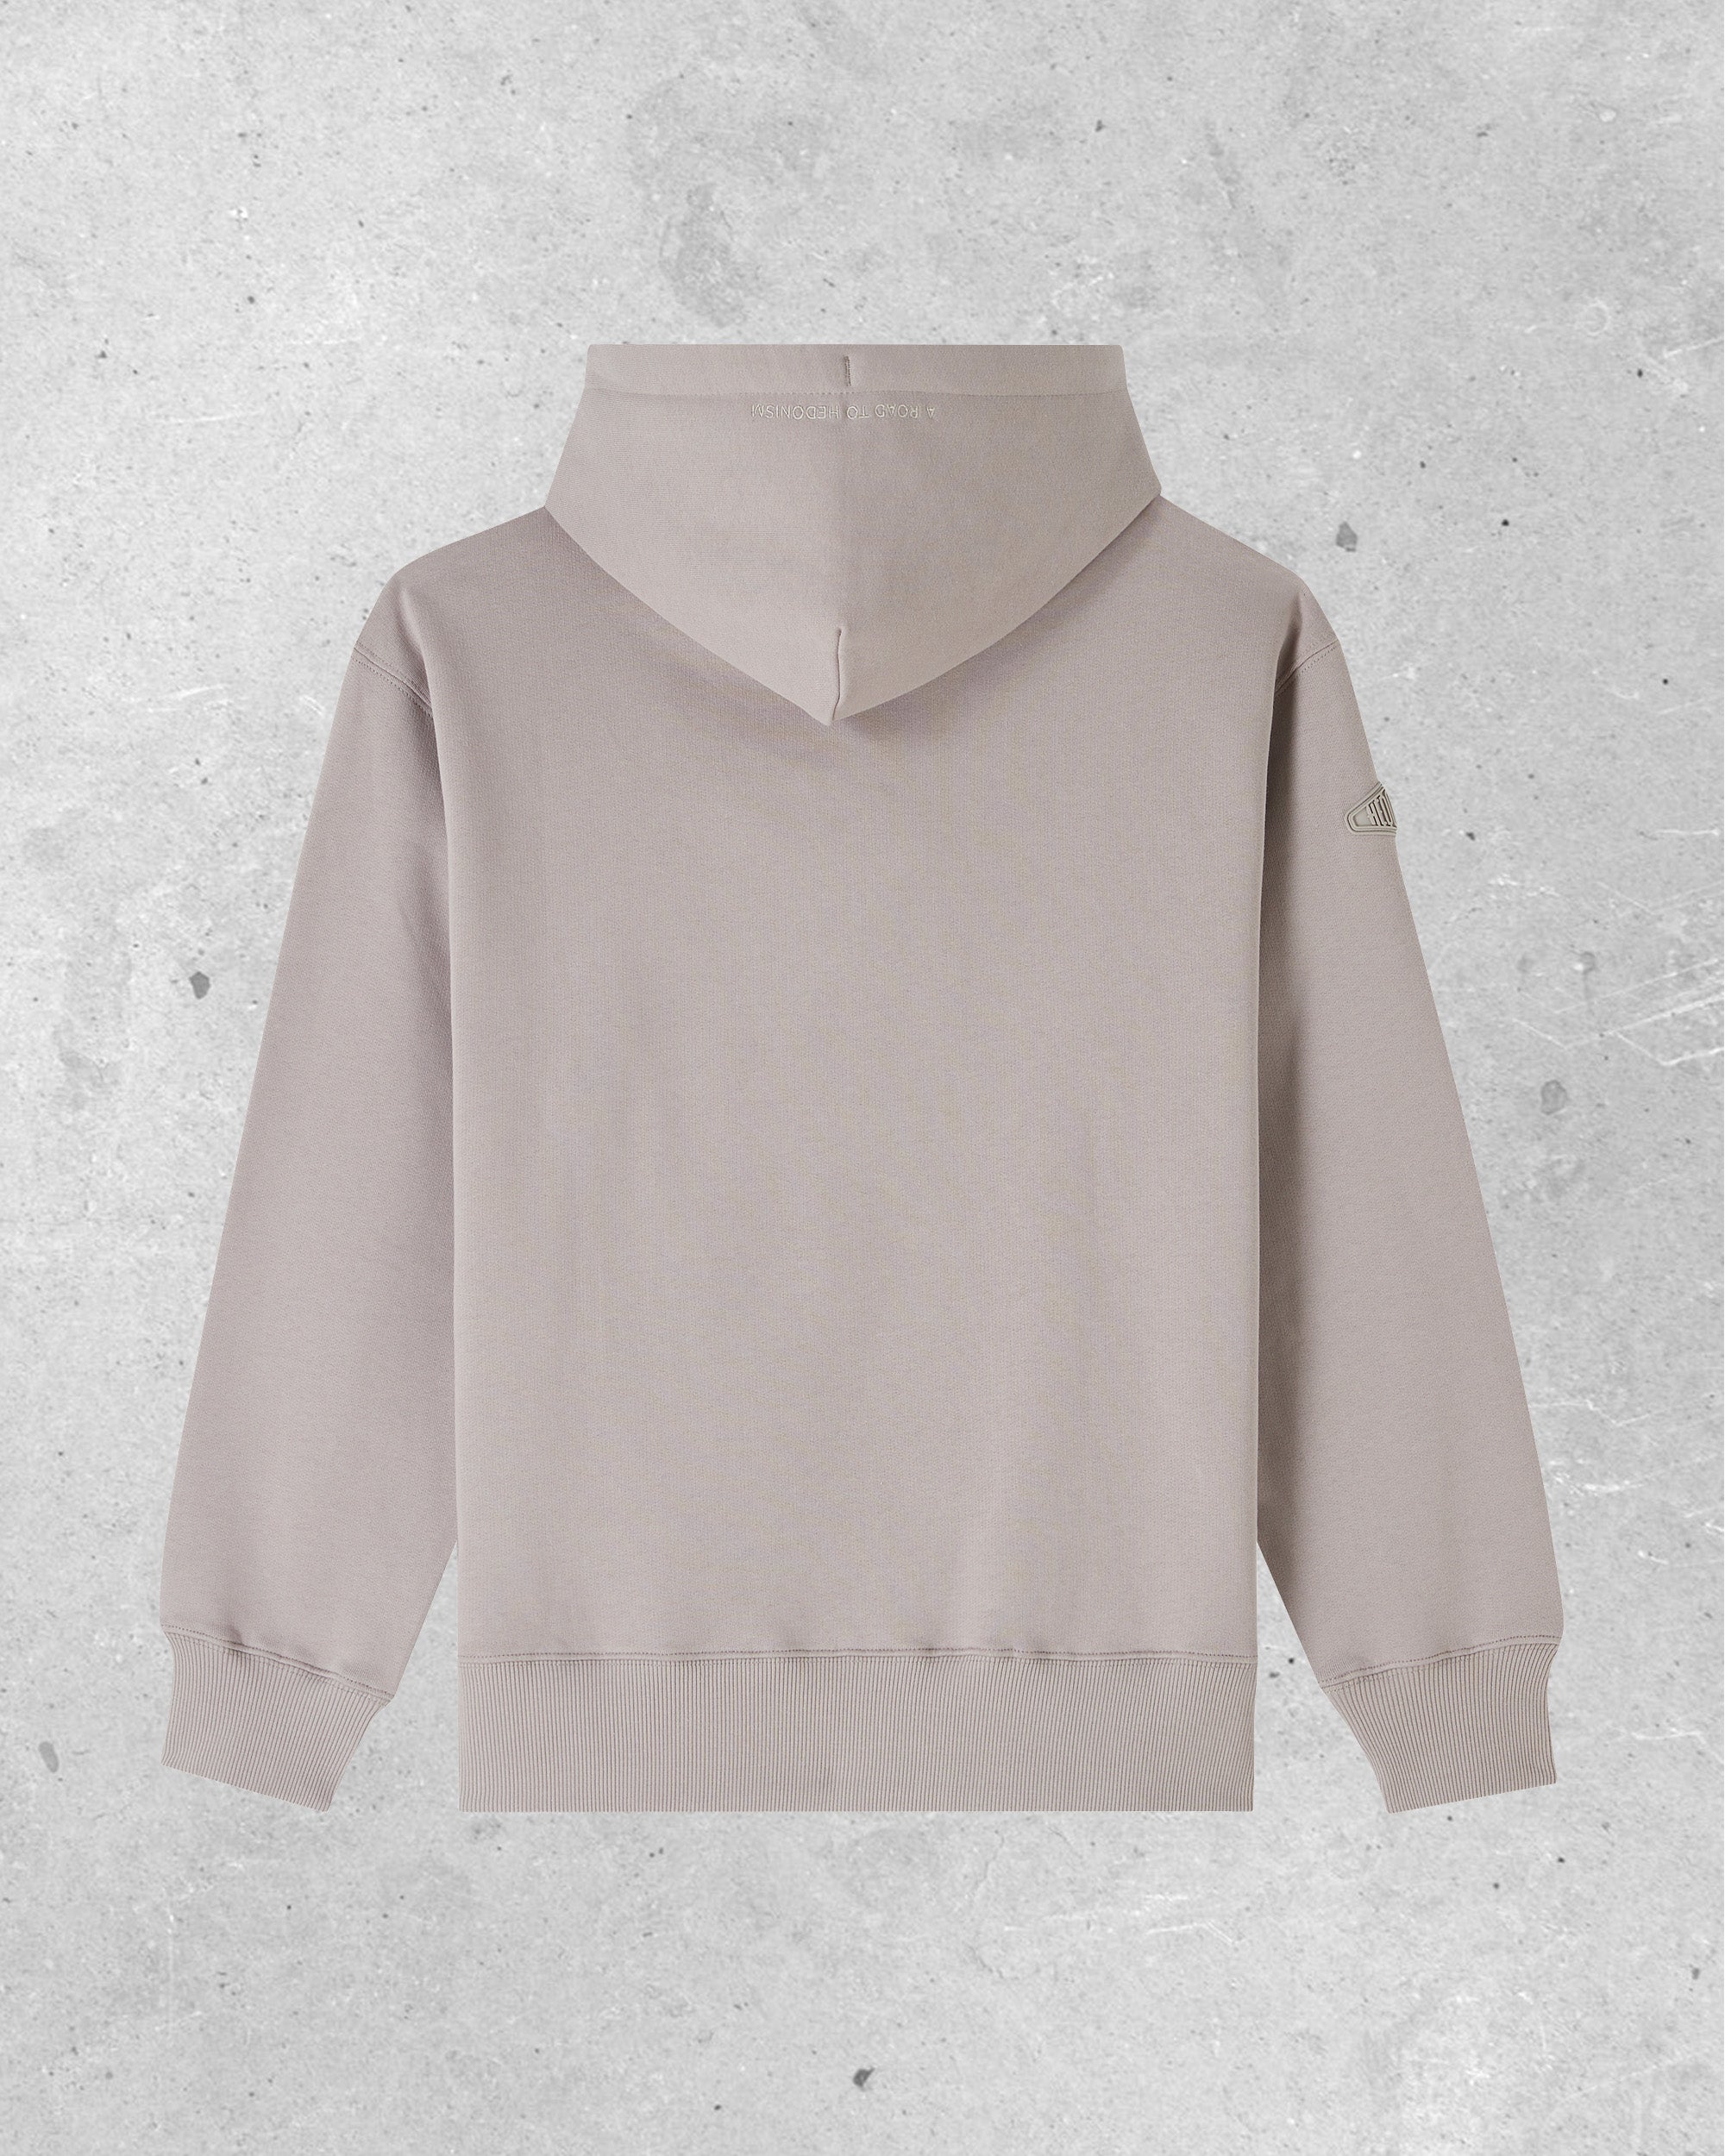 Gray hooded sweatshirt - Basics - Greige embroidery